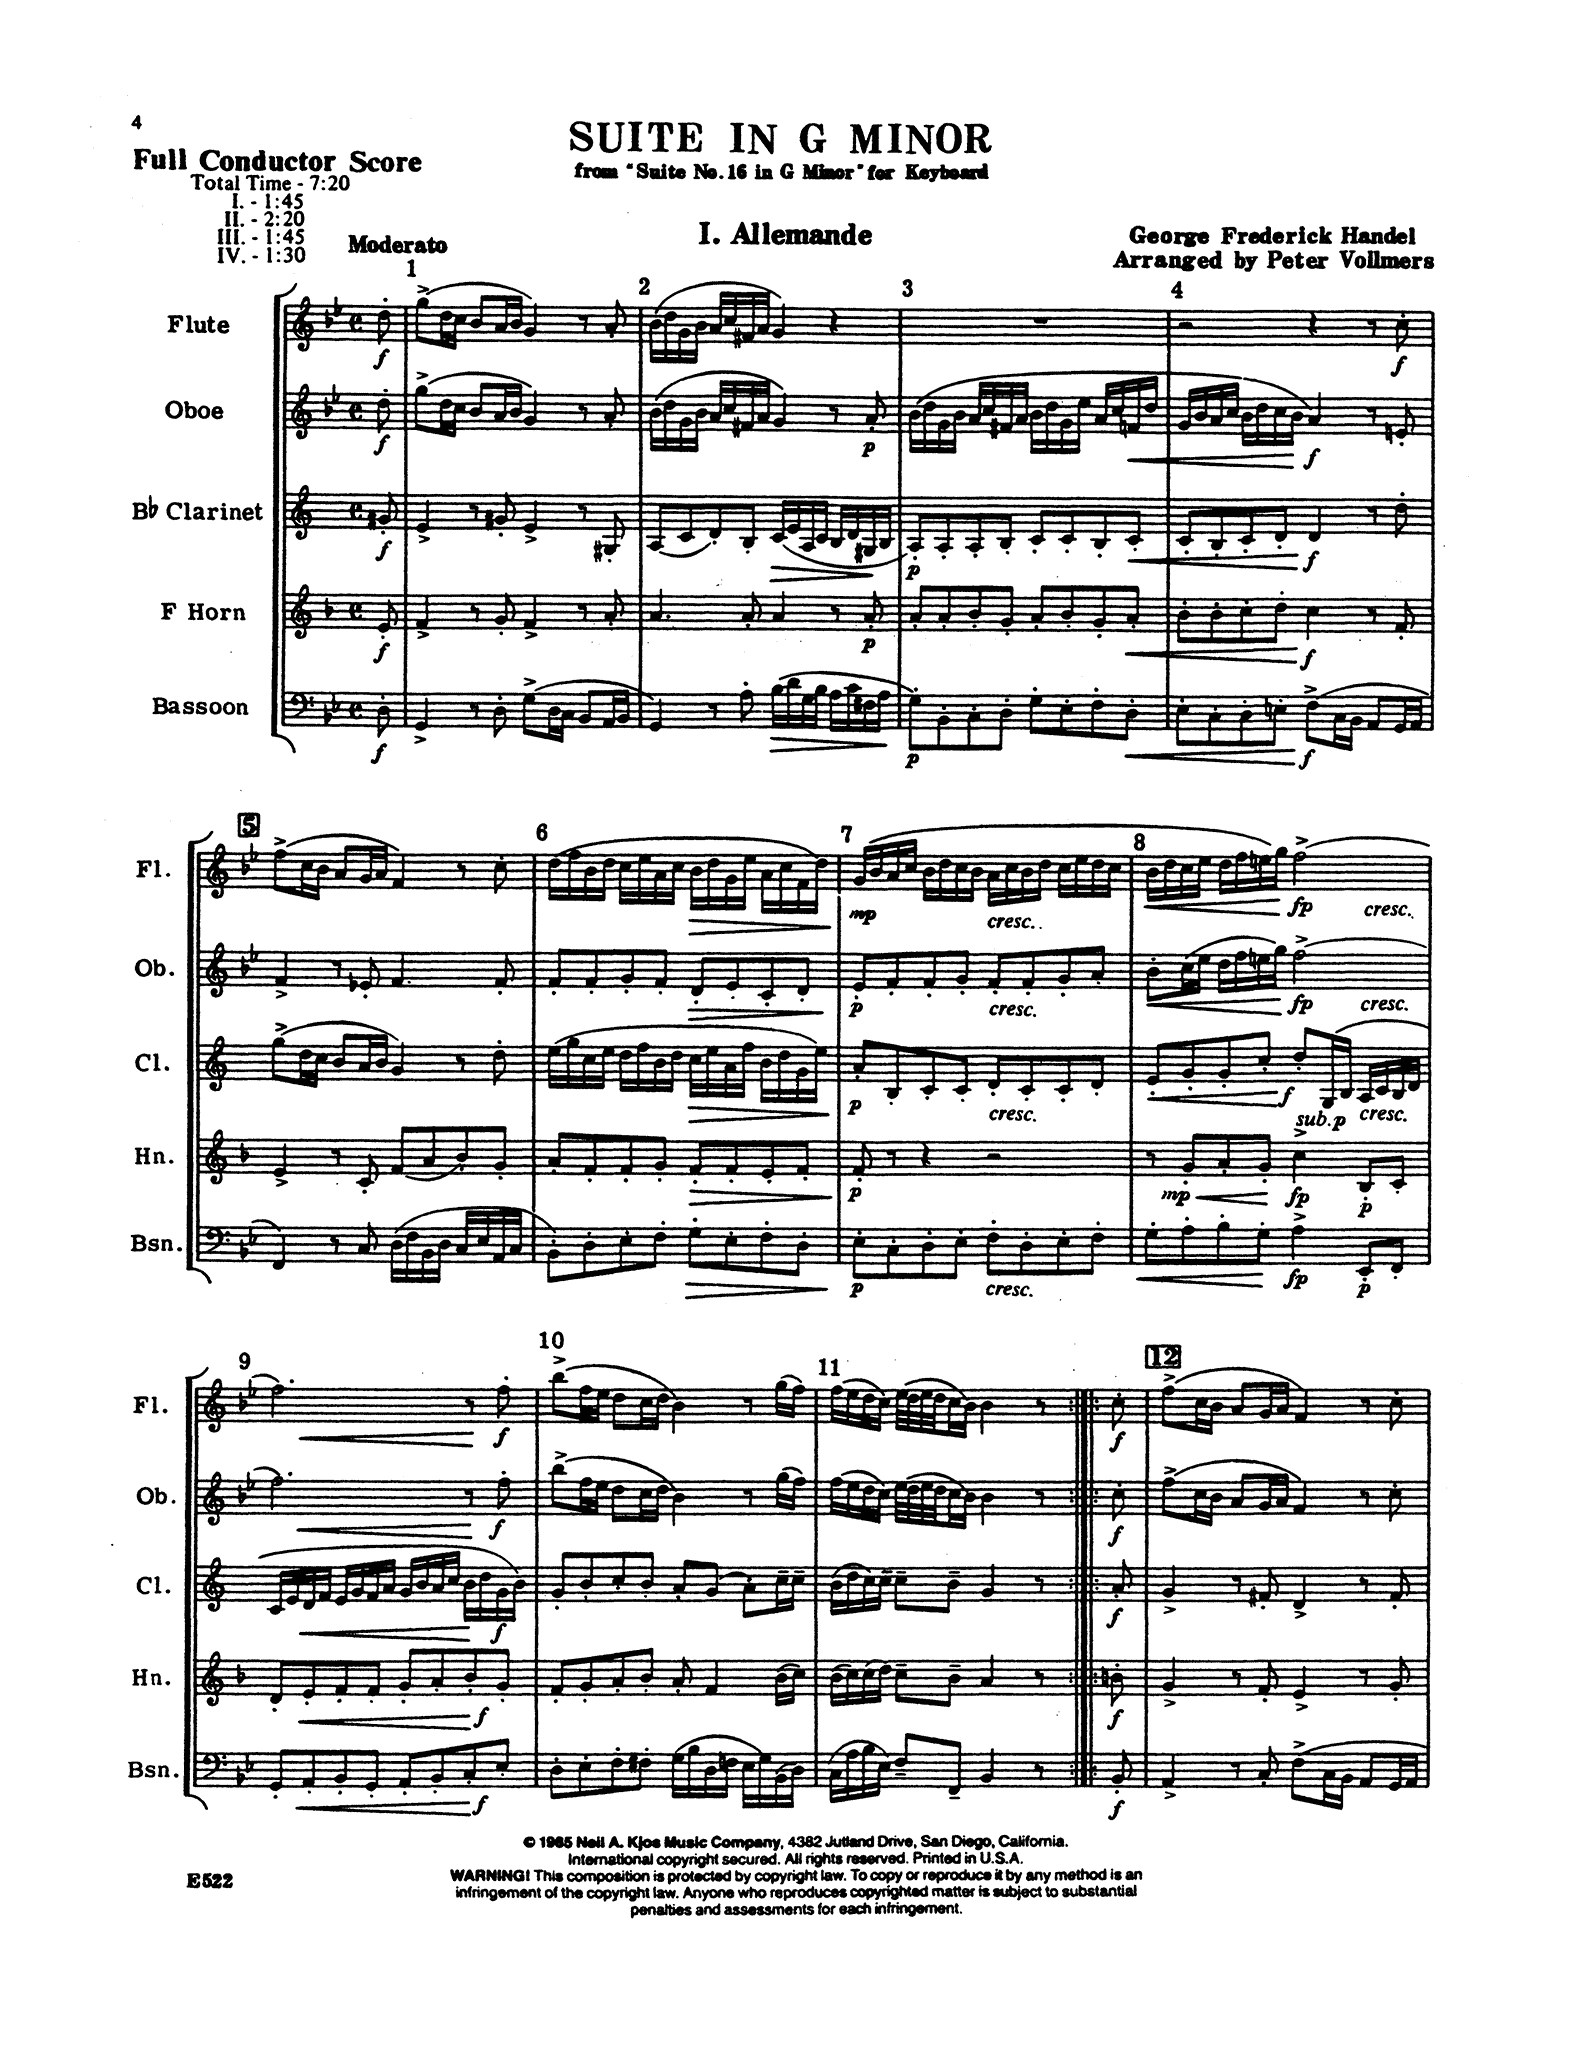 Handel Suite in G Minor, HWV 452 wind quintet arrangement - Movement 1